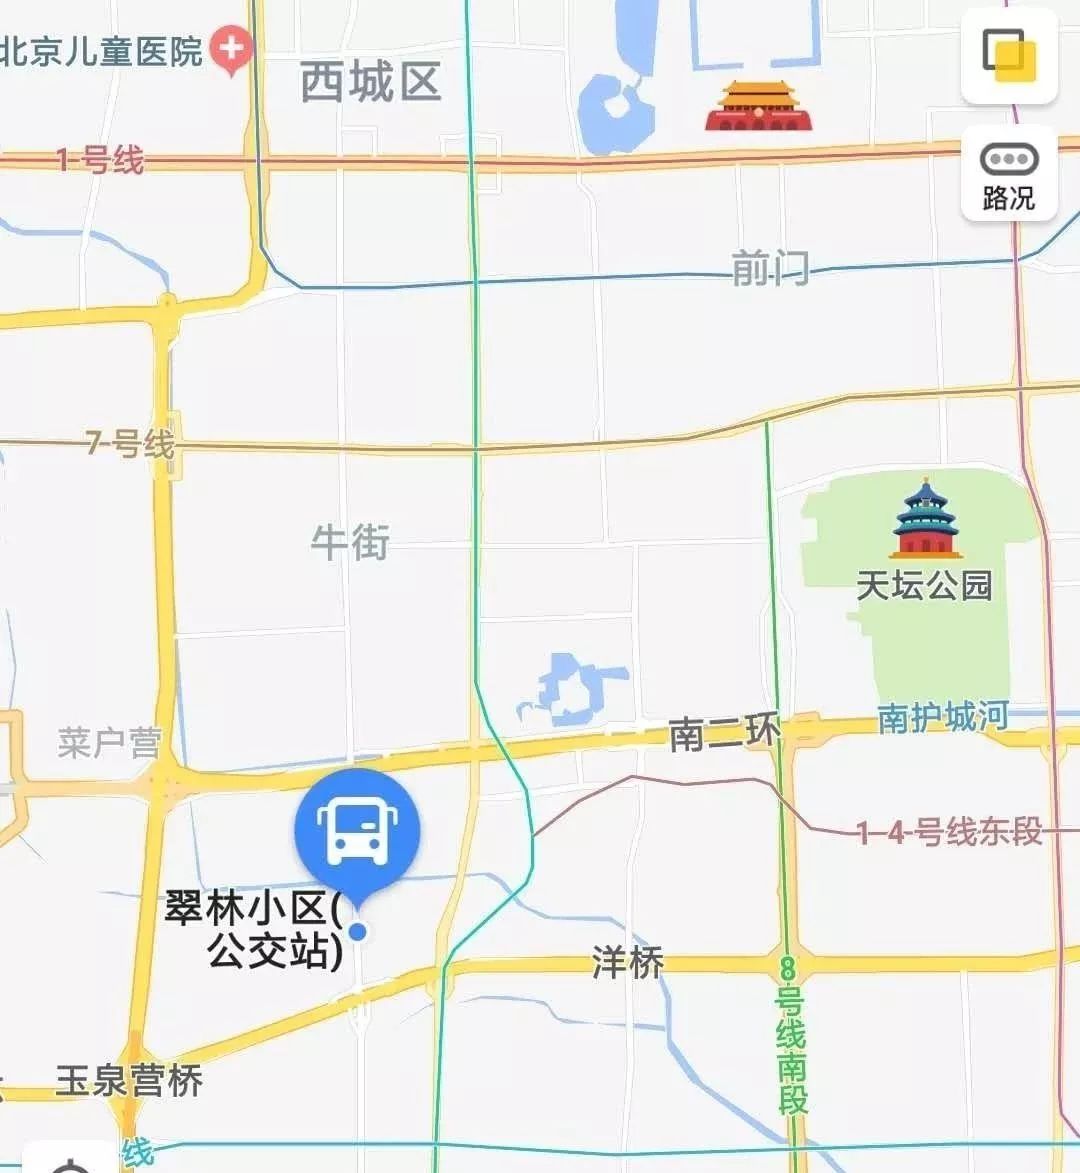 翠林小区公交场站位置/高德地图图片